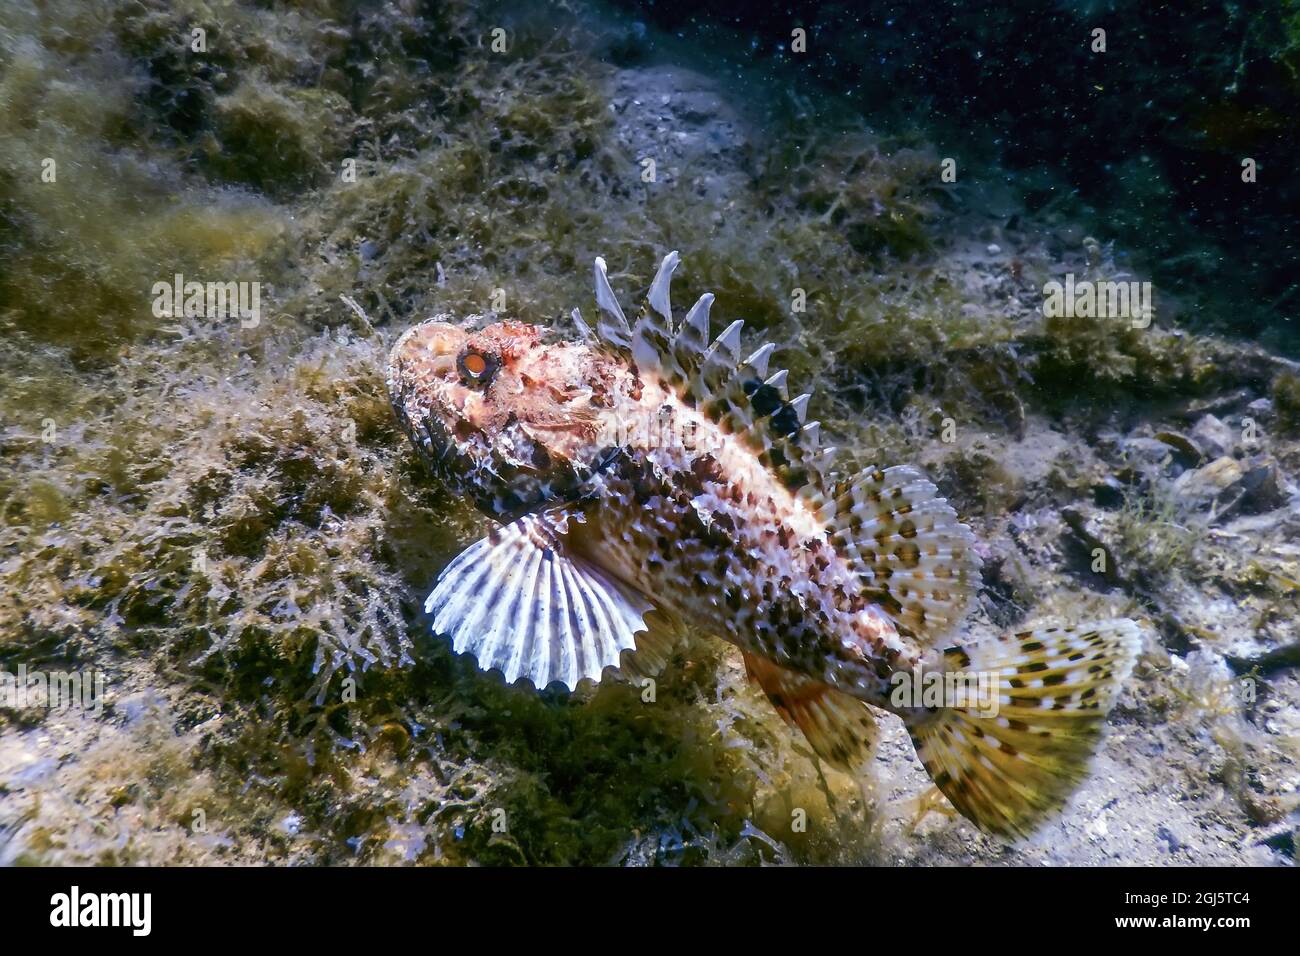 Scorpion Fish Underwater Underwater Life. Scorpionfish (Scorpaena notata) Wildlife Stock Photo